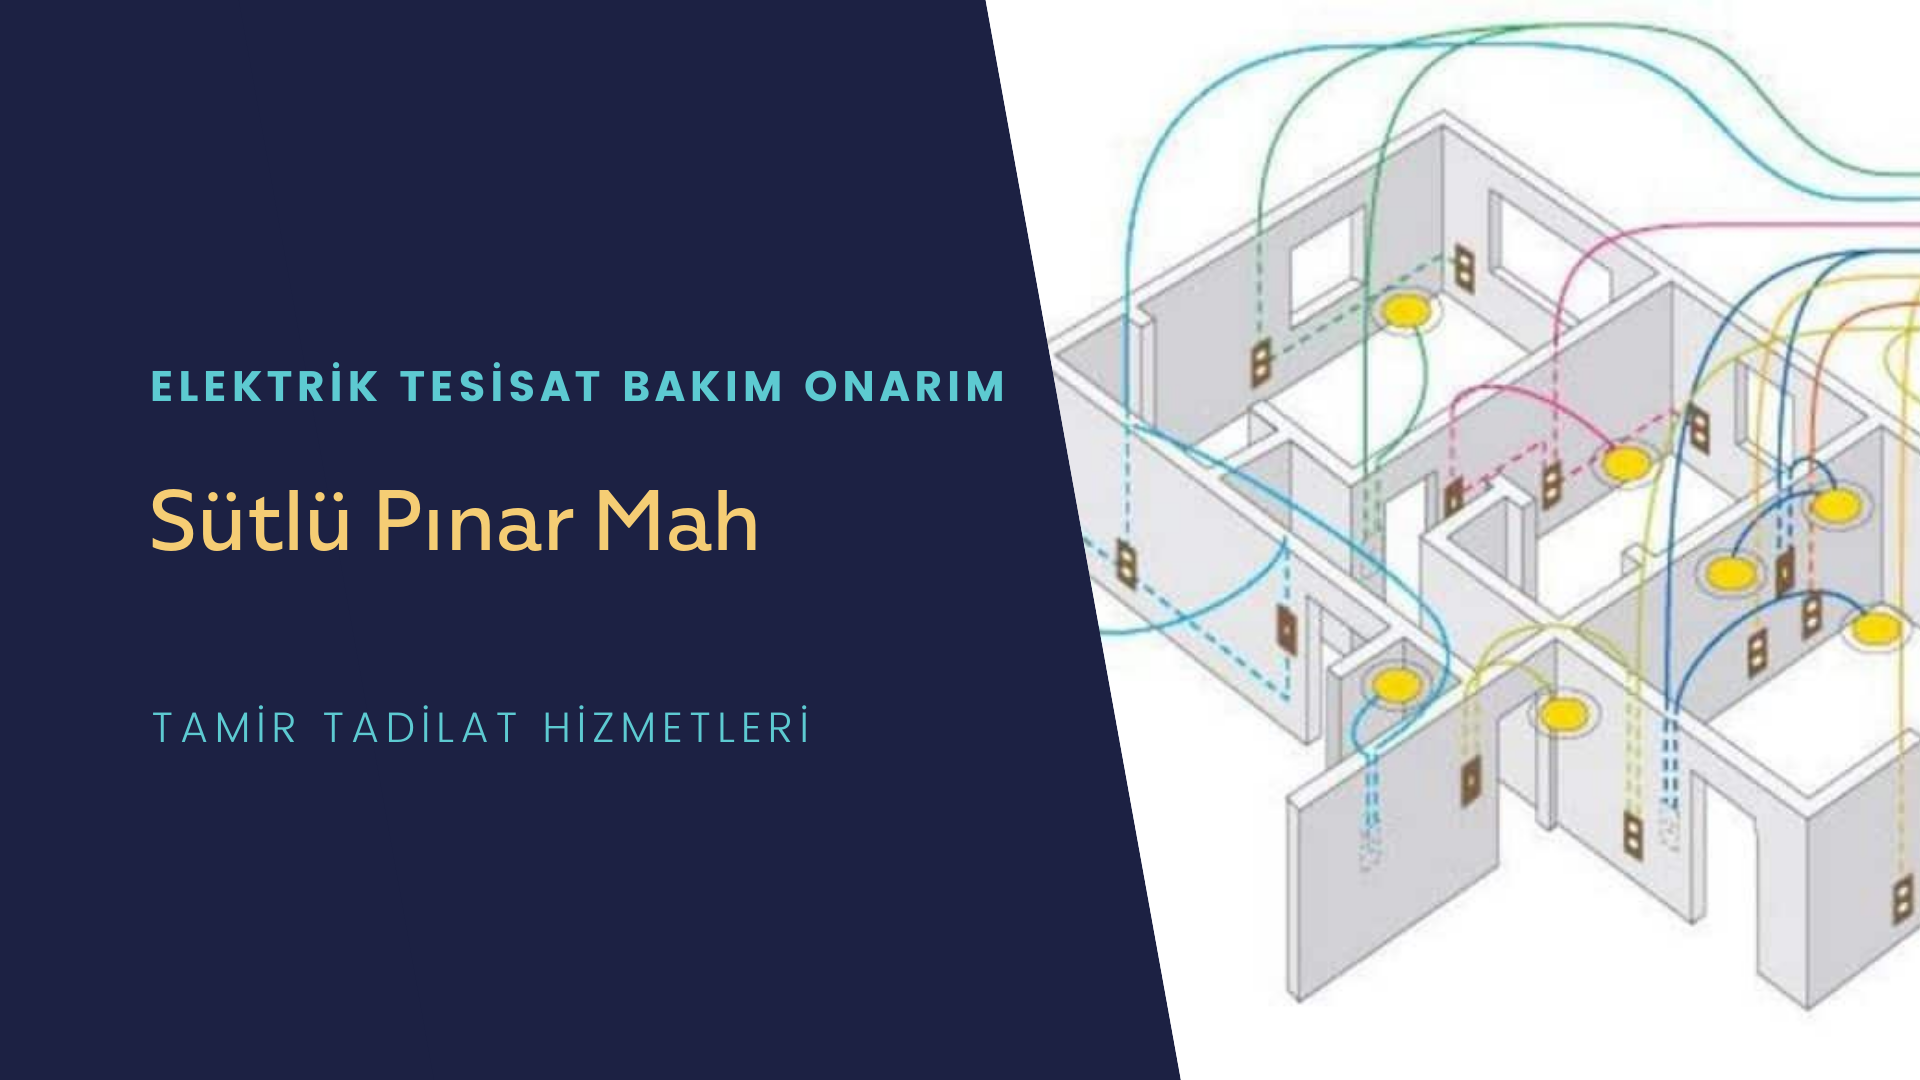 Sütlü Pınar Mah  elektrik tesisatı ustalarımı arıyorsunuz doğru adrestenizi Sütlü Pınar Mah elektrik tesisatı ustalarımız 7/24 sizlere hizmet vermekten mutluluk duyar.